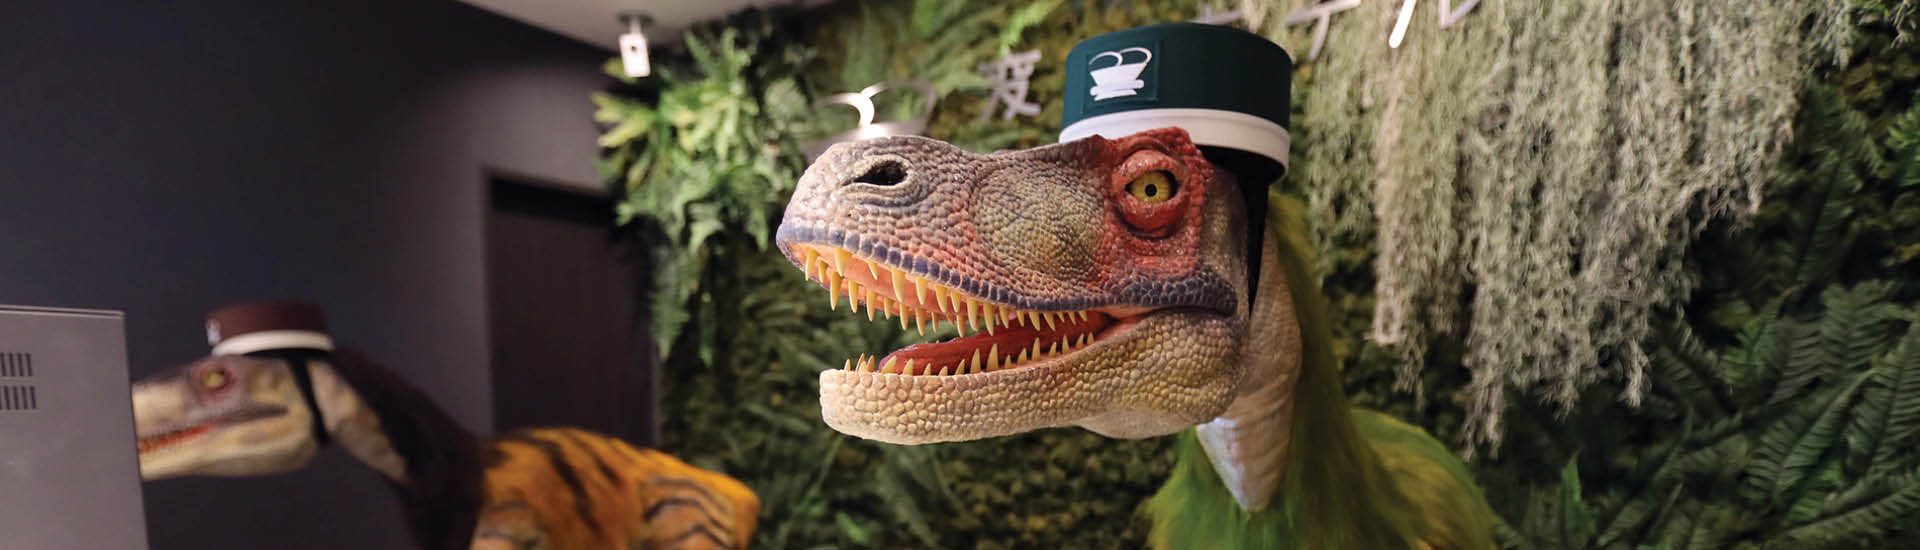 Dinossauros-robôs com quepe verde recepcionam hóspedes em hotel japonês.